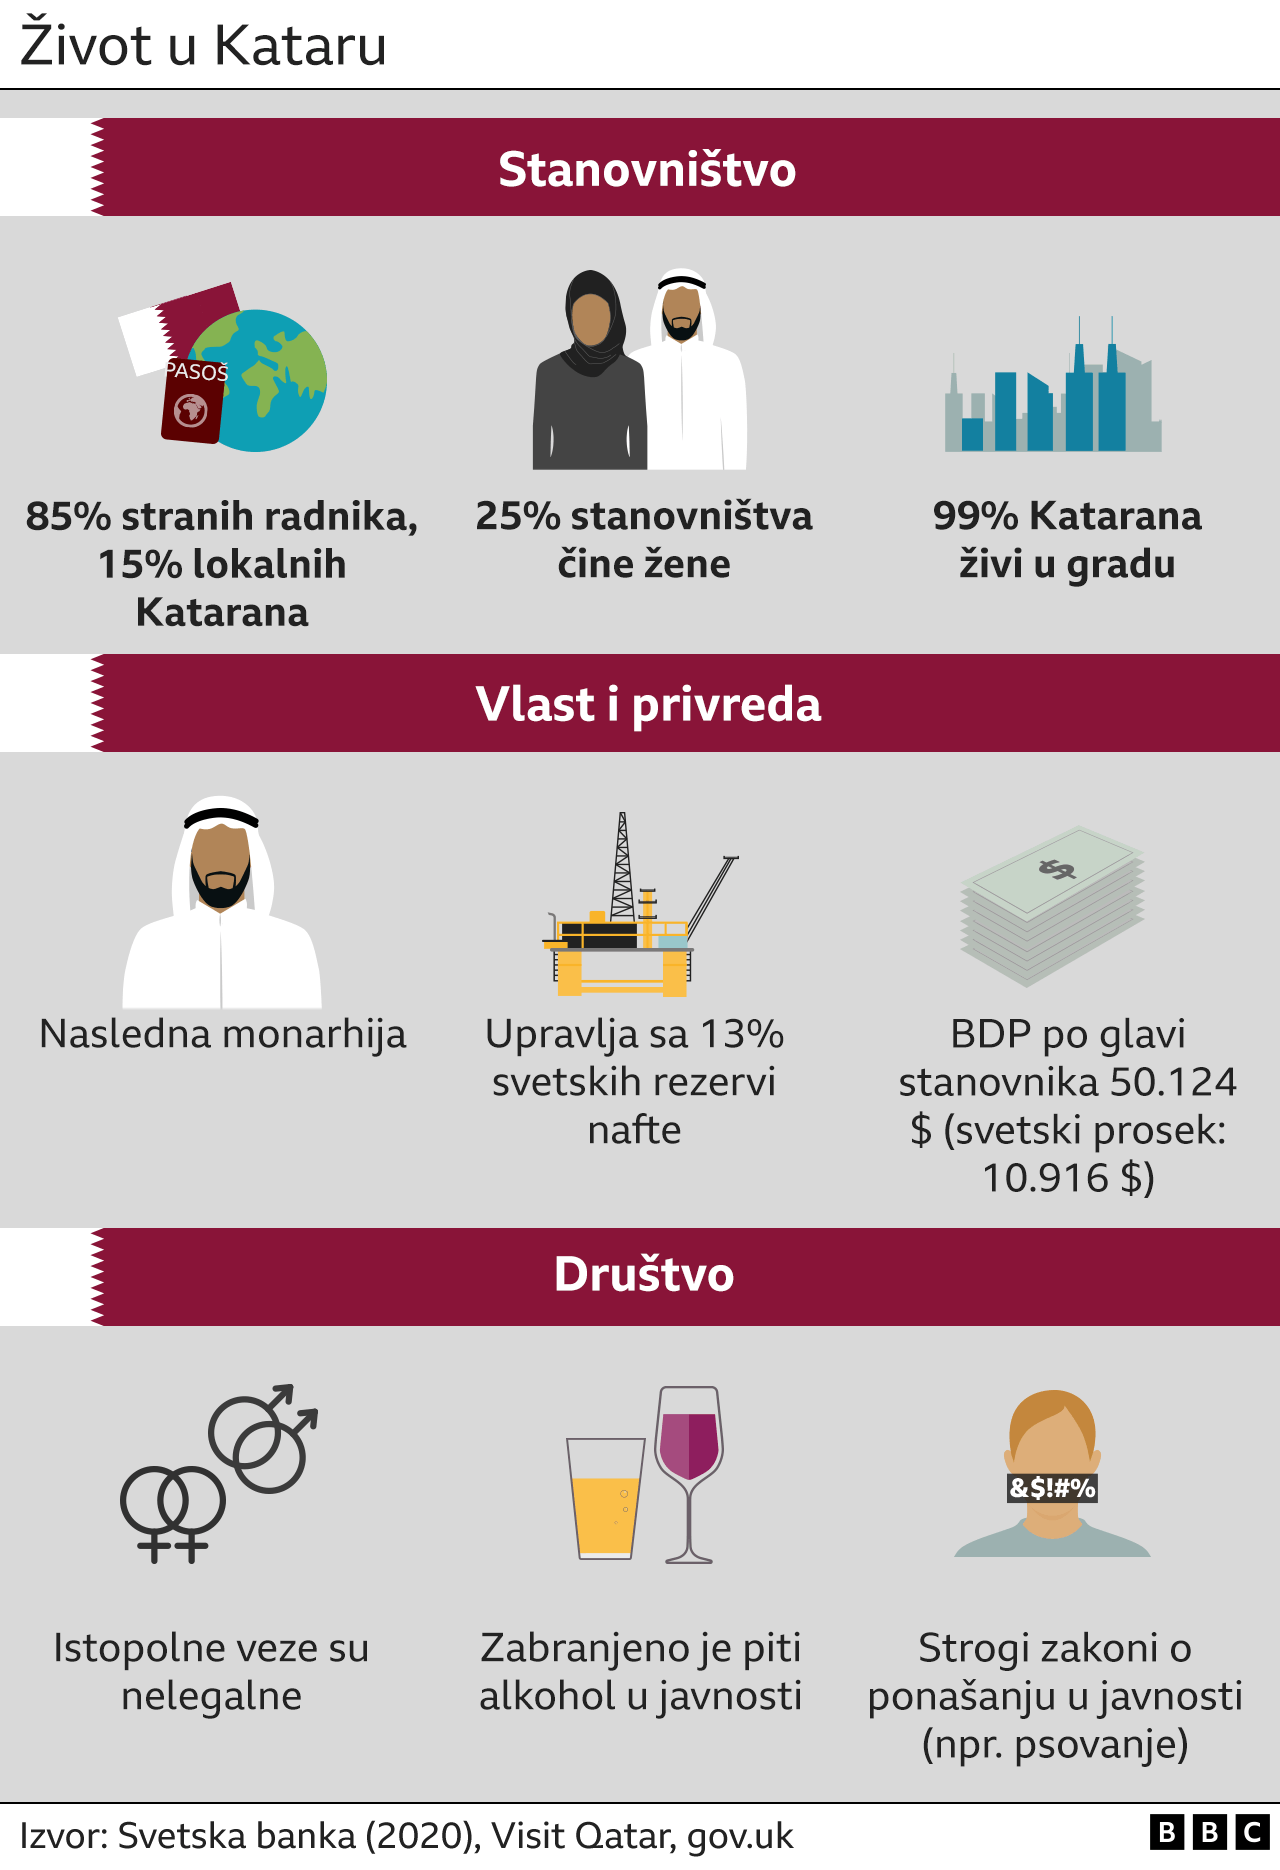 Katar, stanovništvo